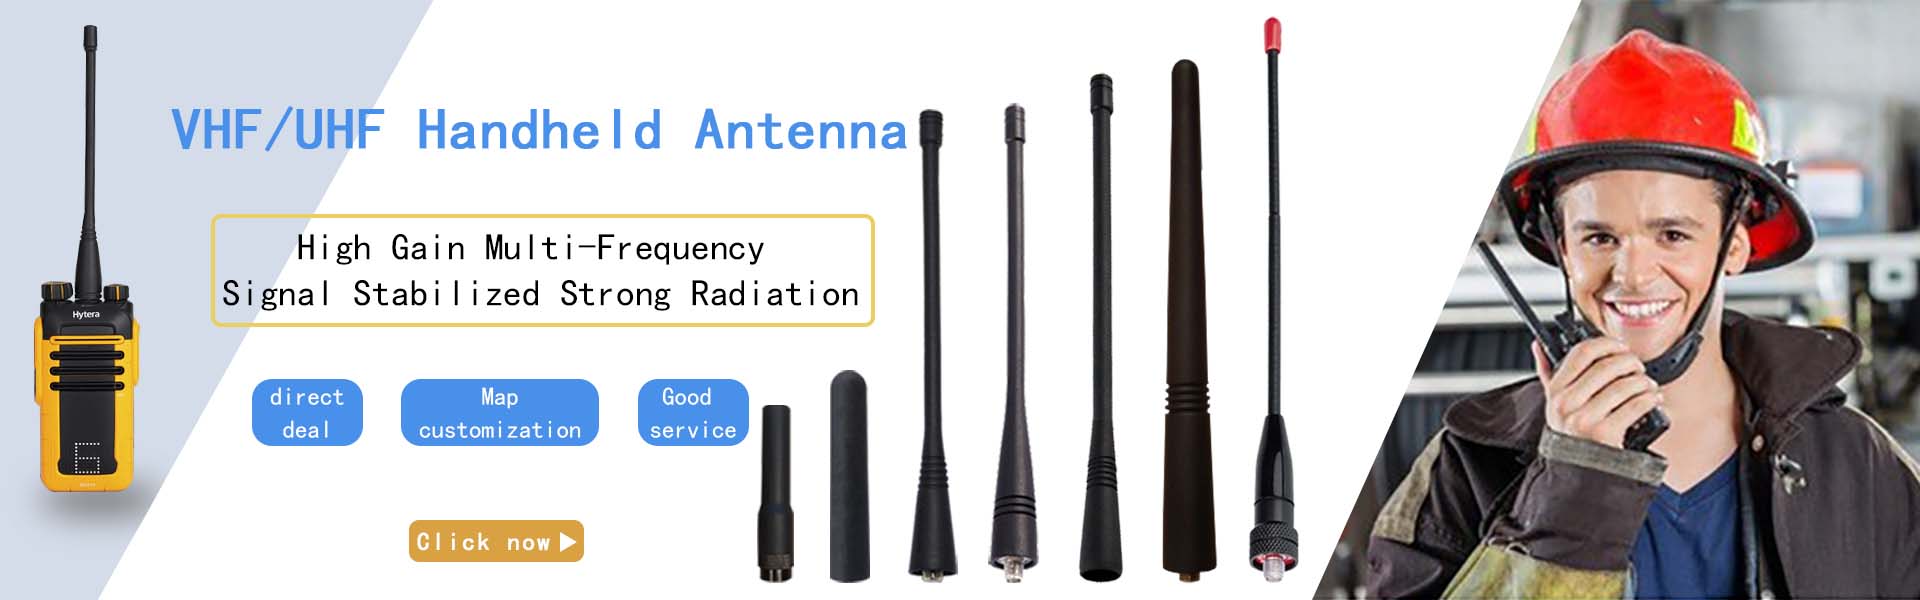 Handheld radio antenna